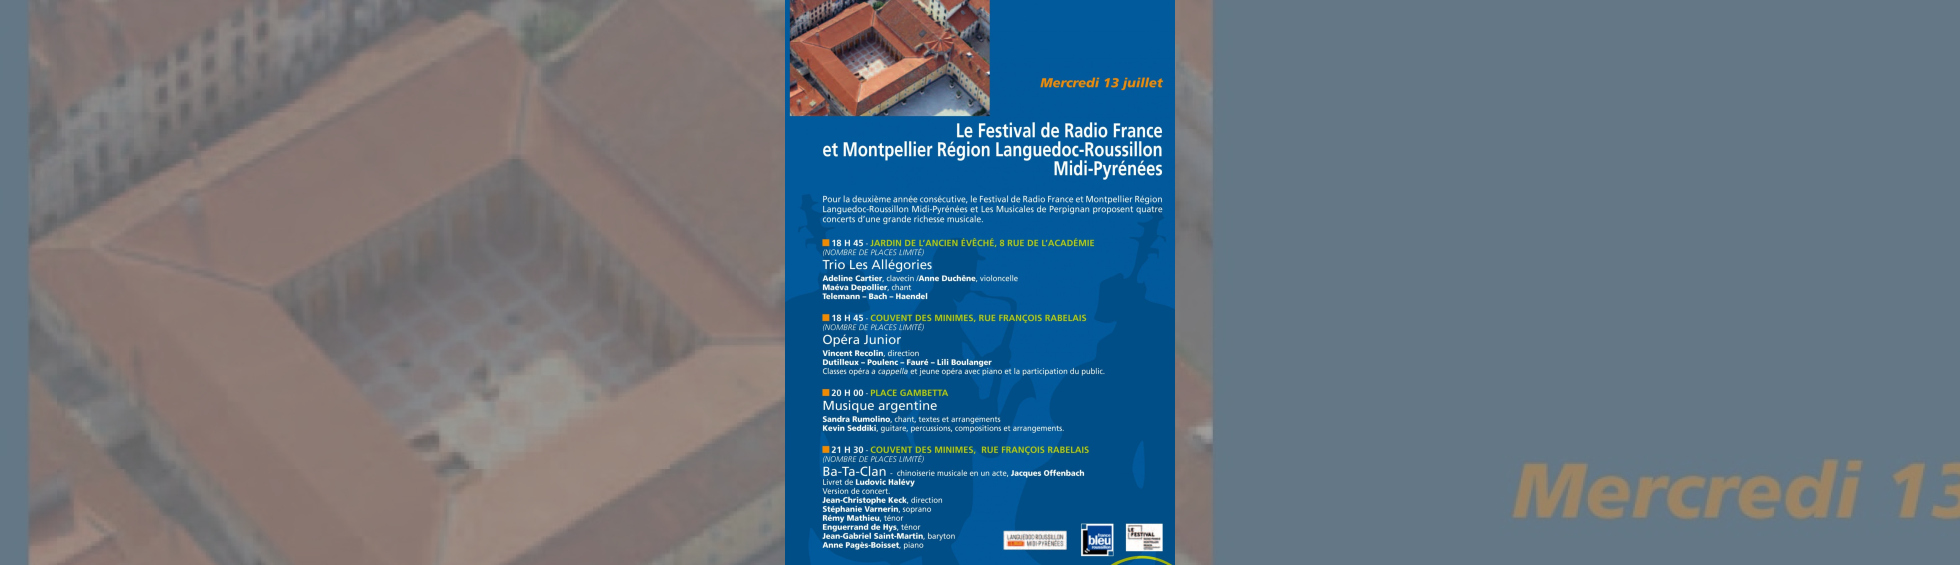 Festival de Radio France et Montpellier Région Languedoc-Roussillon Midi-Pyrénées et les Musicales de Perpignan 